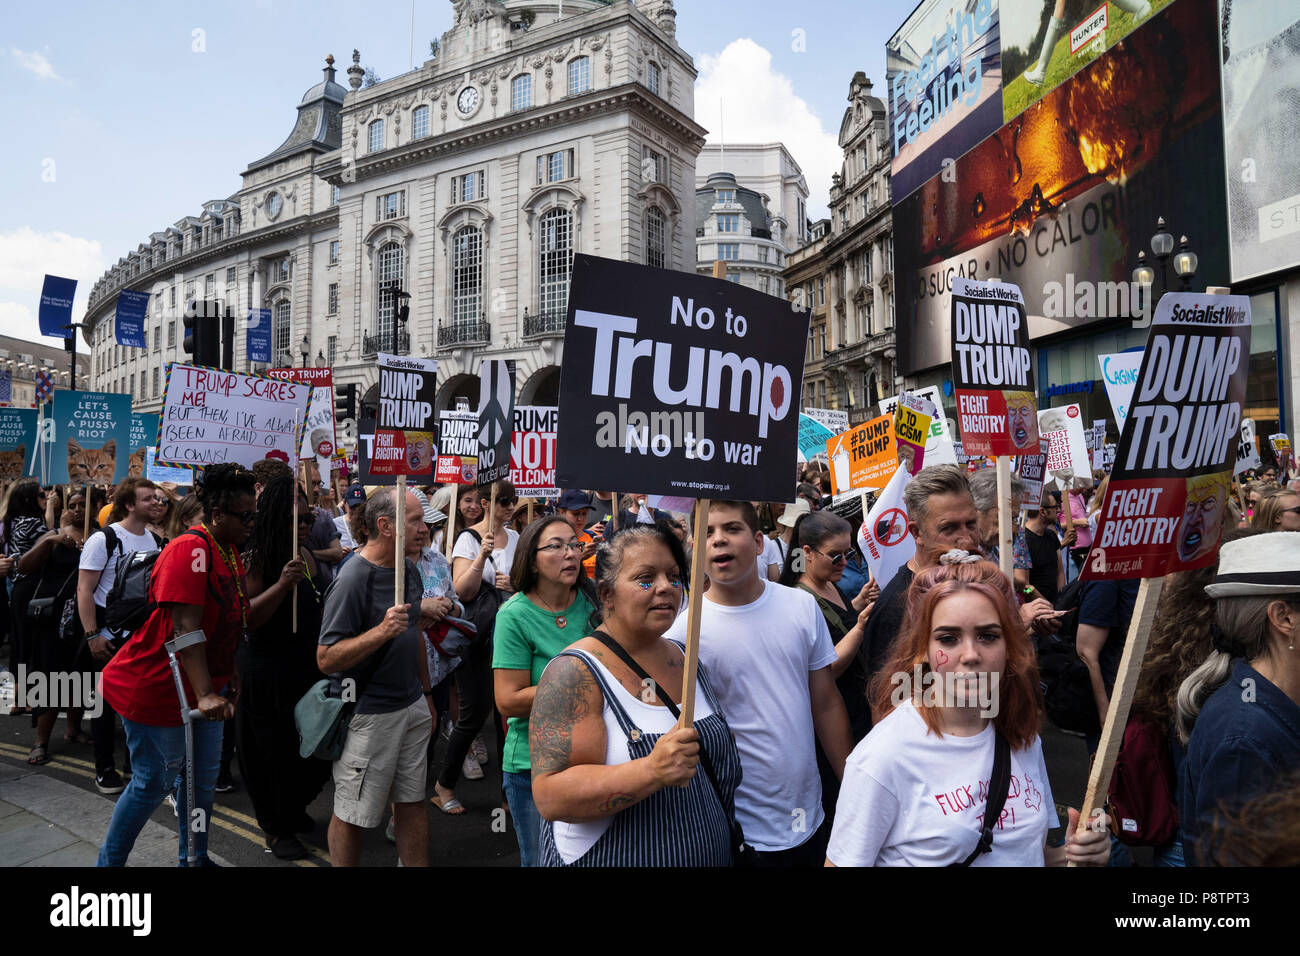 Londres - le 13 juillet : une marche de protestation contre la visite au Royaume-Uni par le président américain, Donald Trump, passe à travers le centre de Londres le 13 juillet 2018,. Photo de David Levenson Crédit : David Levenson/Alamy Live News Crédit : David Levenson/Alamy Live News Banque D'Images